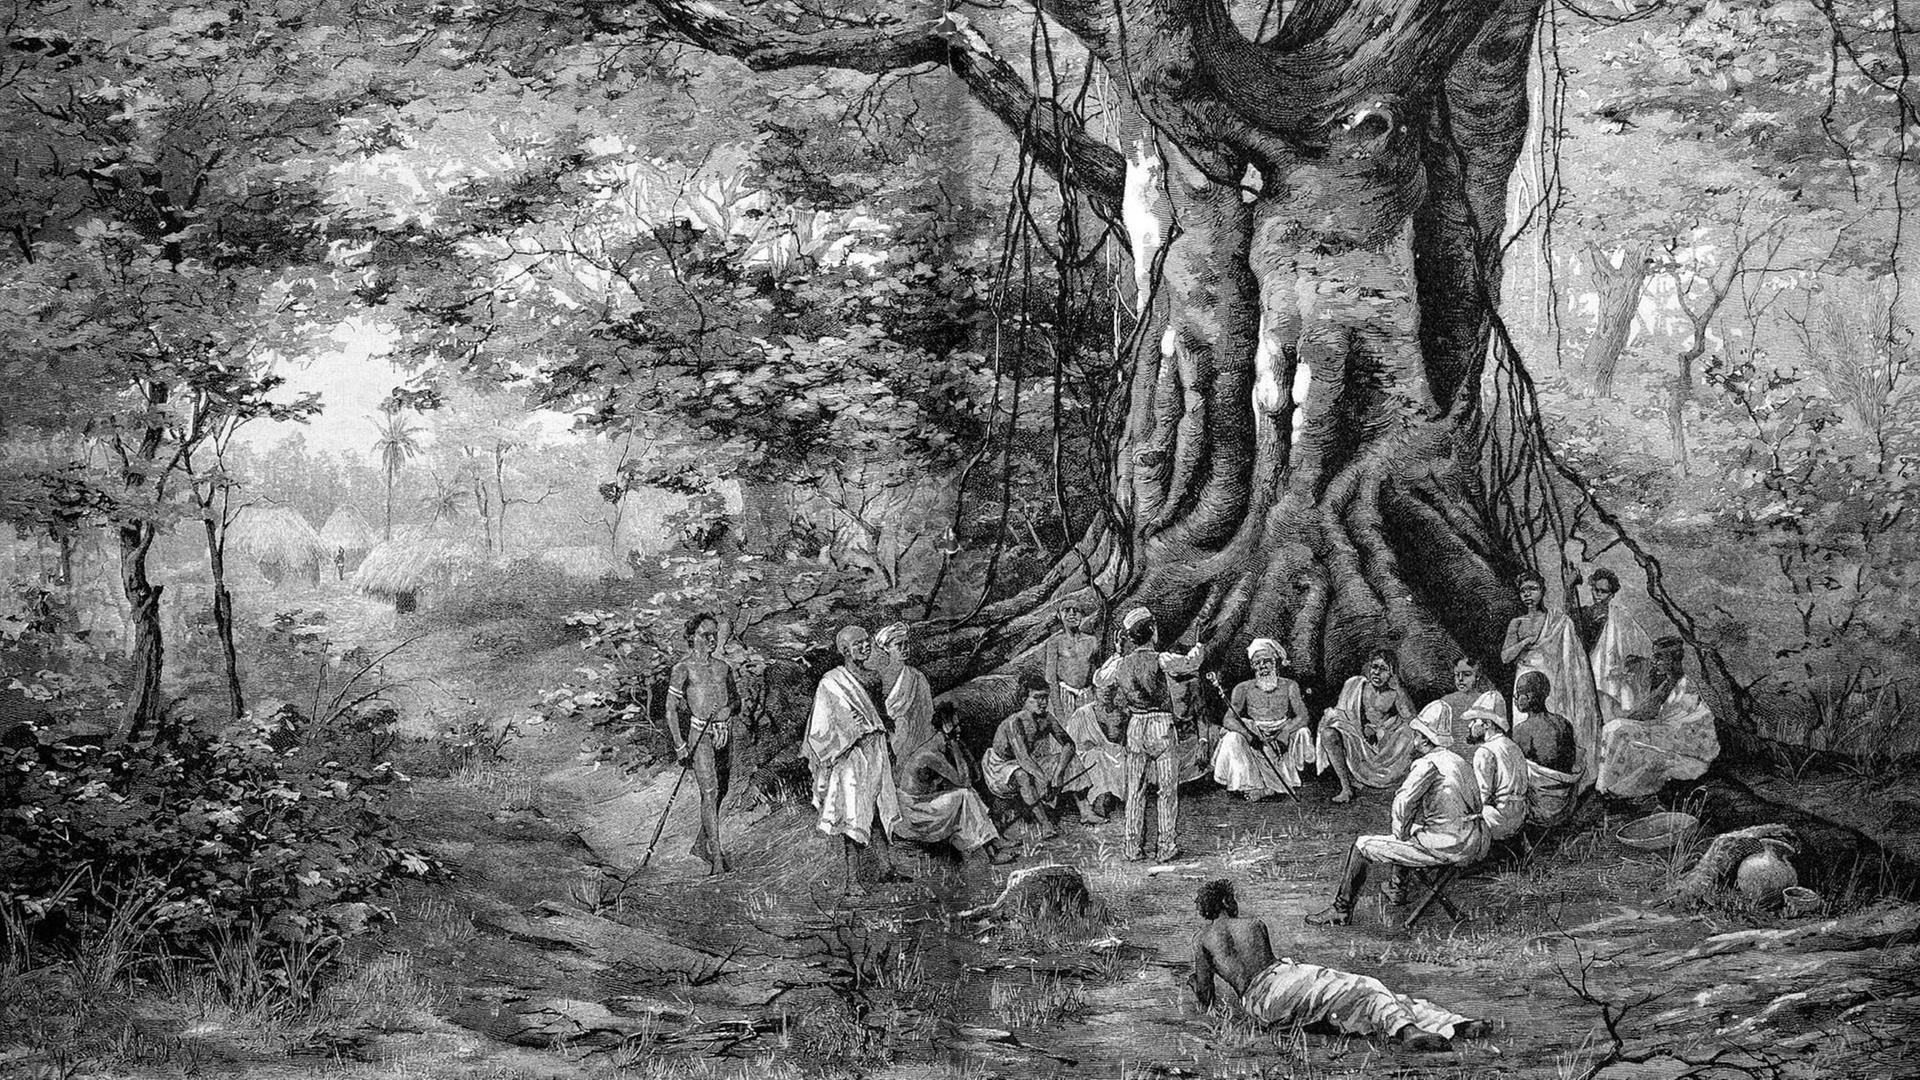 Historische Illustration: "Palaverplatz im Walde vor der Bismarckburg in Adeliland, Westafrika", heute Togo, Holzschnitt, ca. 1888.